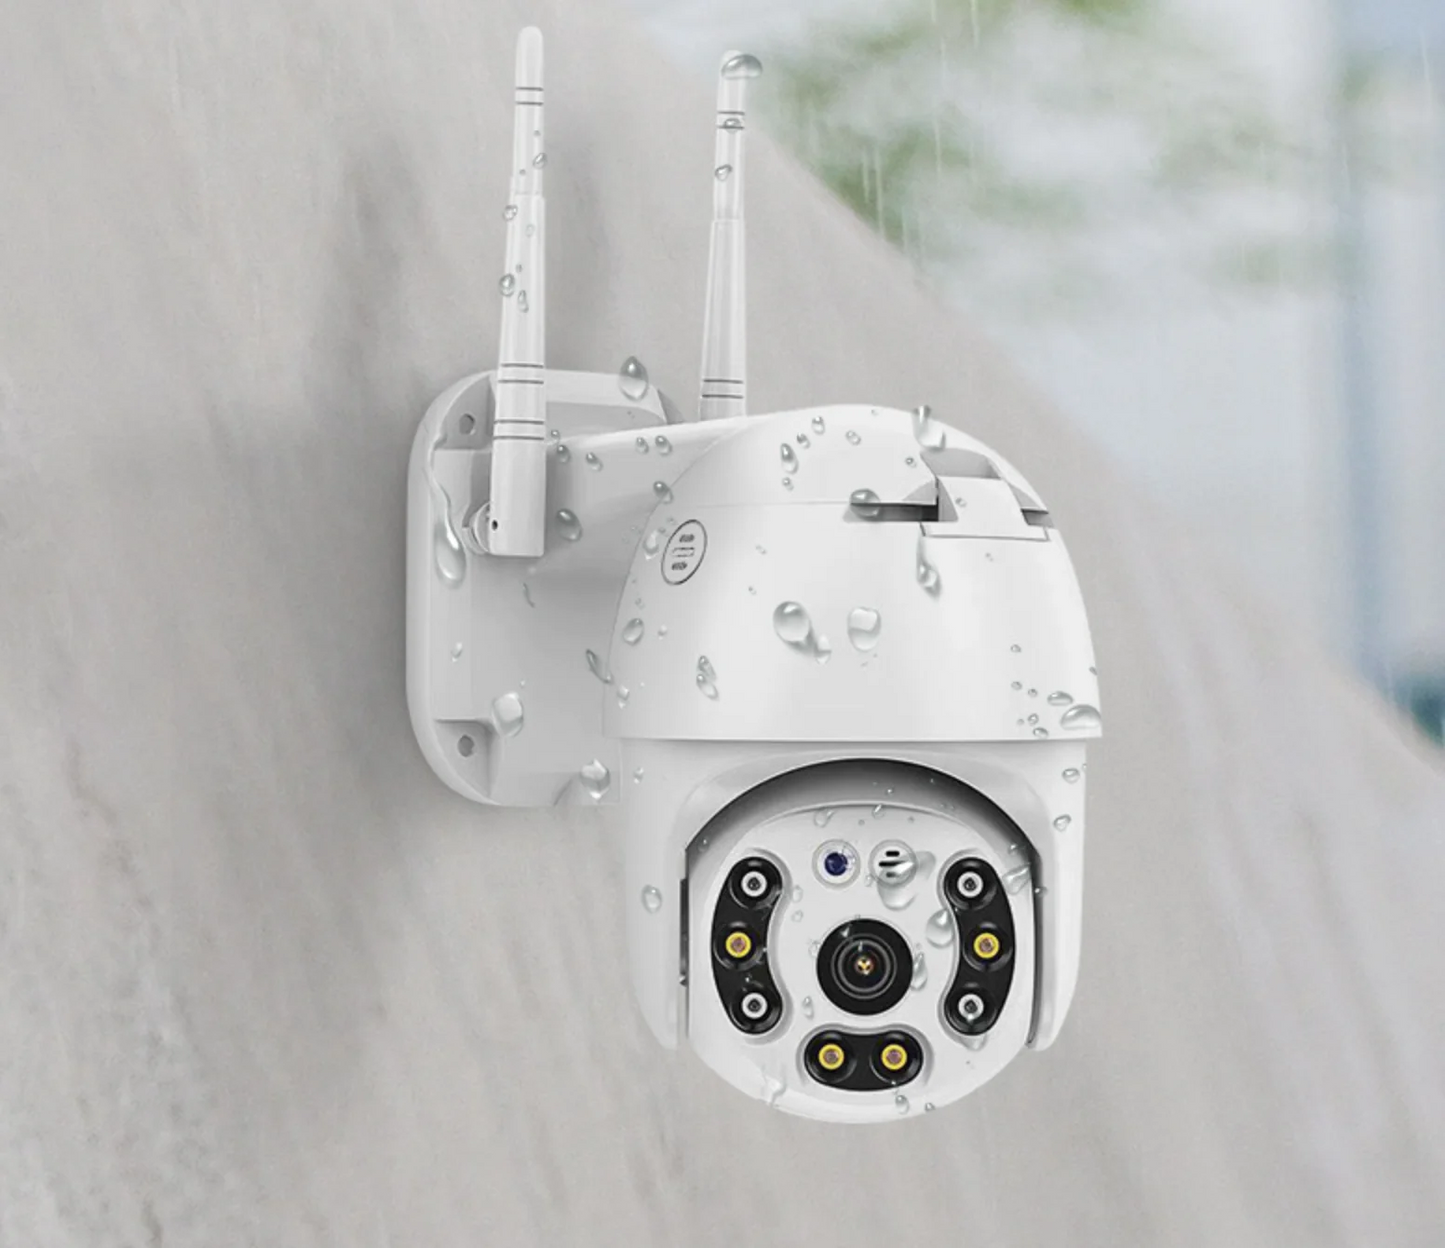 SET 3 X Camera Smart Color Jortan Surveillance3® Wifi, IP Vizualizare Live Prin Aplicatie, Senzor de Miscare + 3 CARDURI CADOU